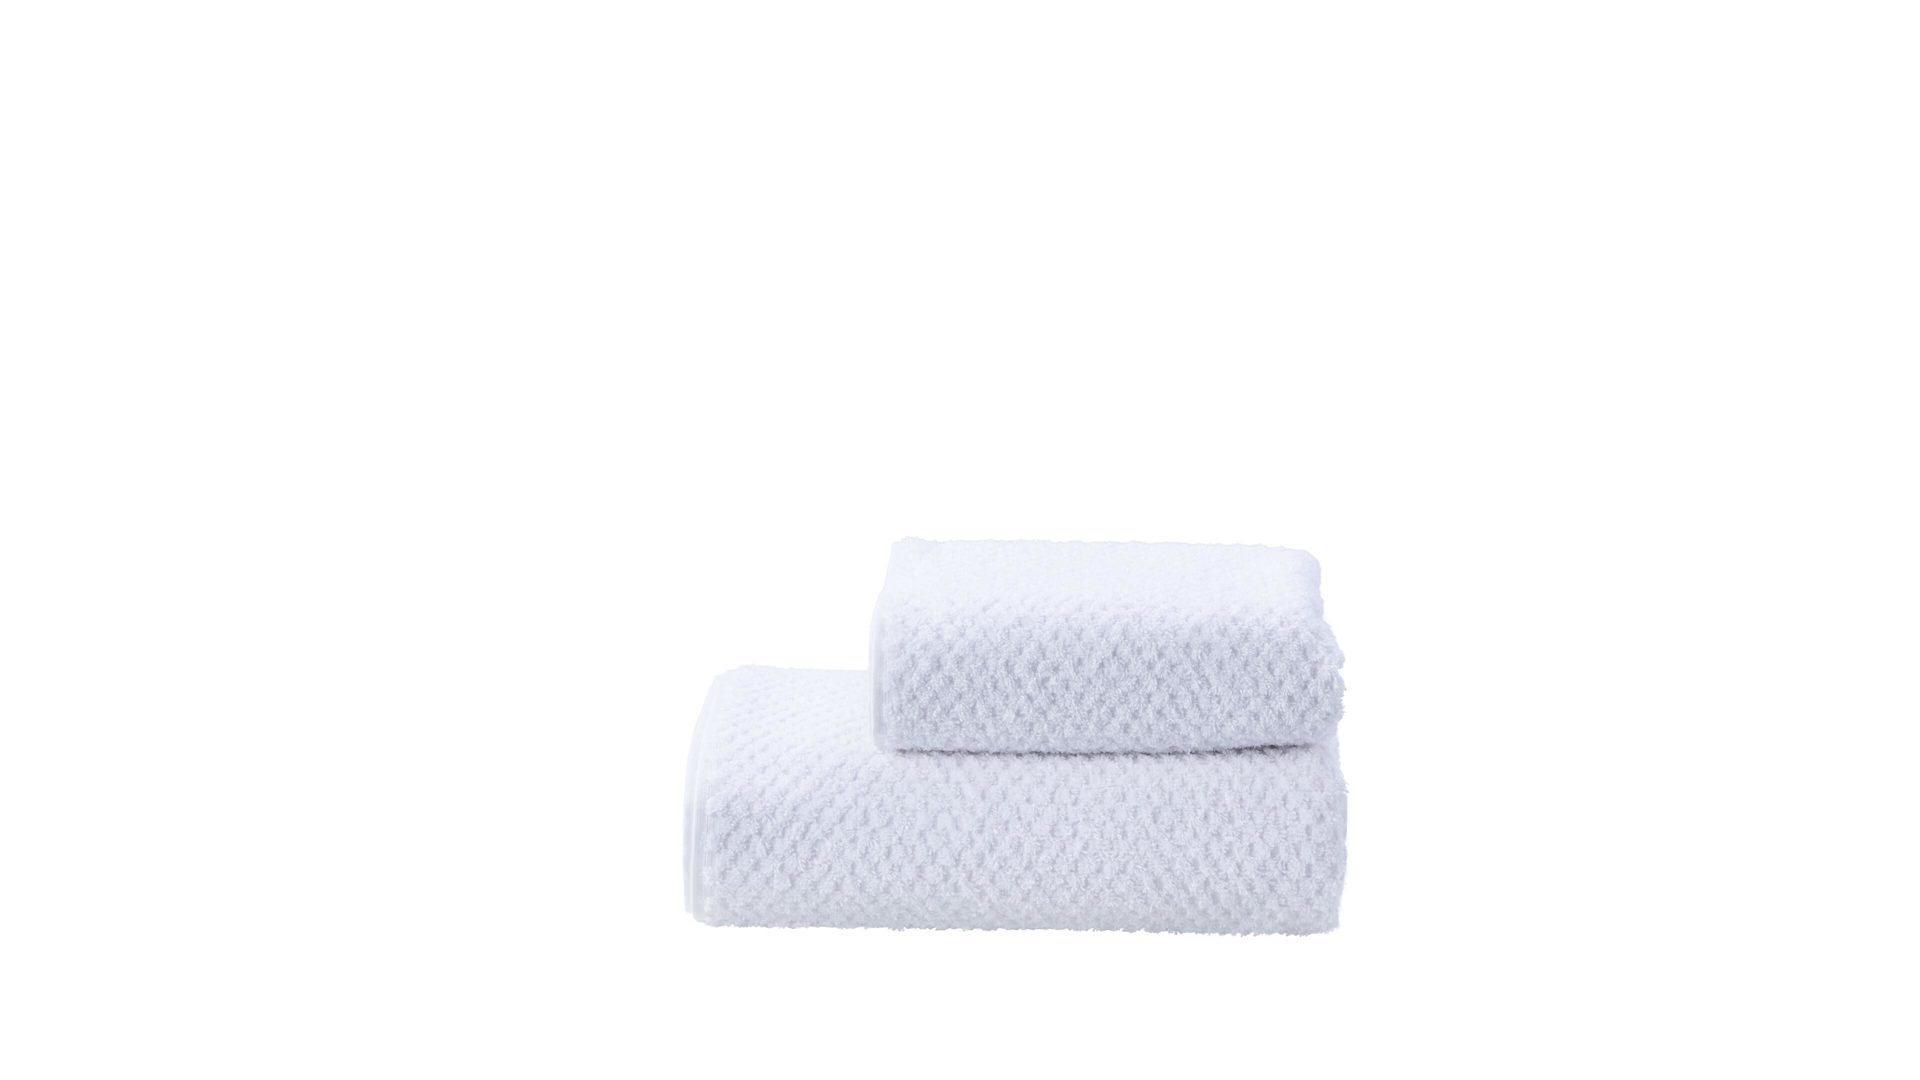 Handtuch-Set Done by karabel home company aus Stoff in Weiß done Handtuch-Set Provence Honeycomb weiße Baumwolle  – zweiteilig